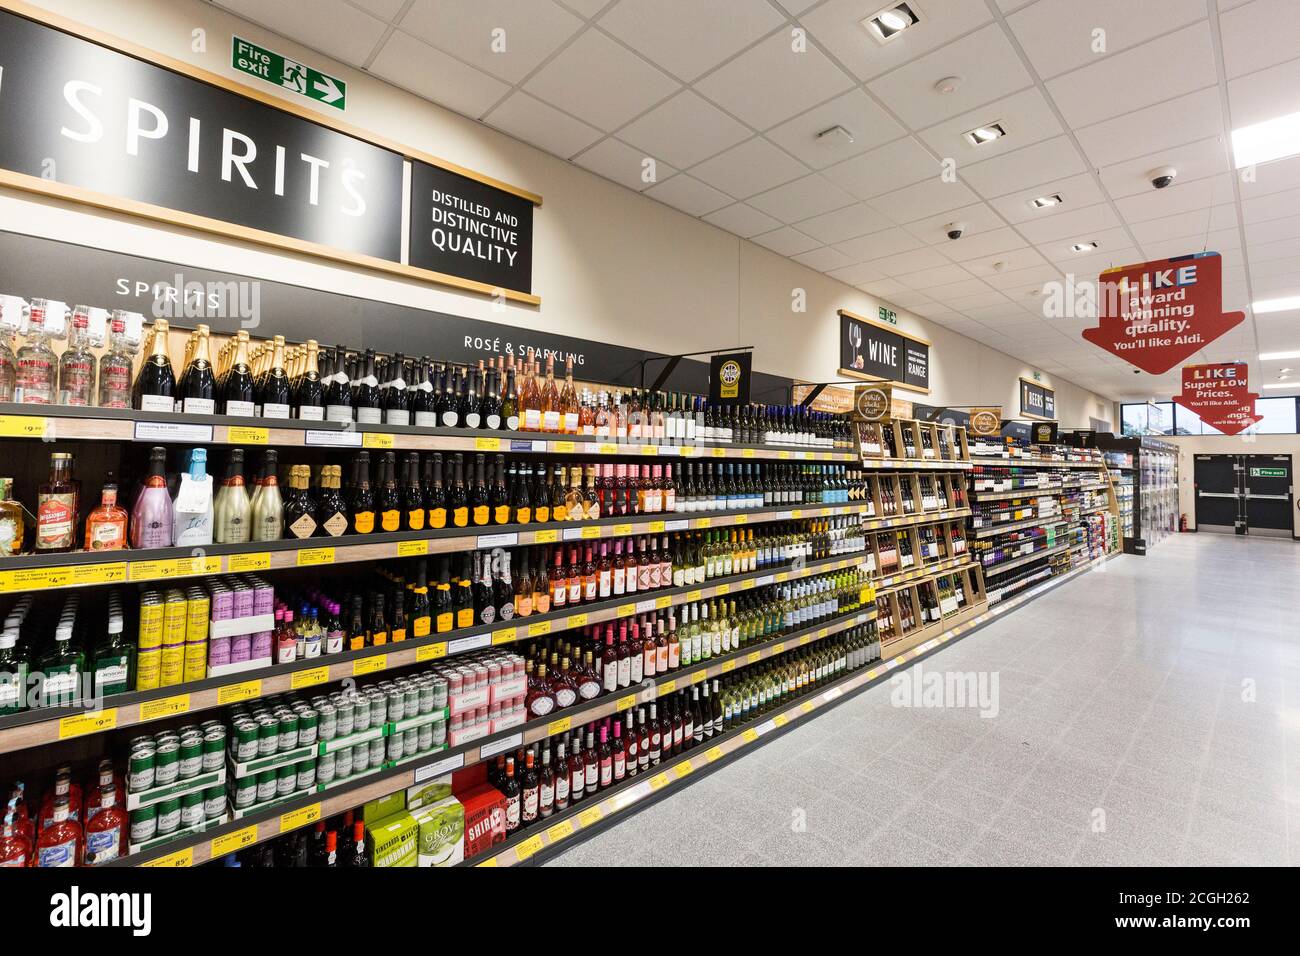 Aldi Supermarket interiord Stock Photo